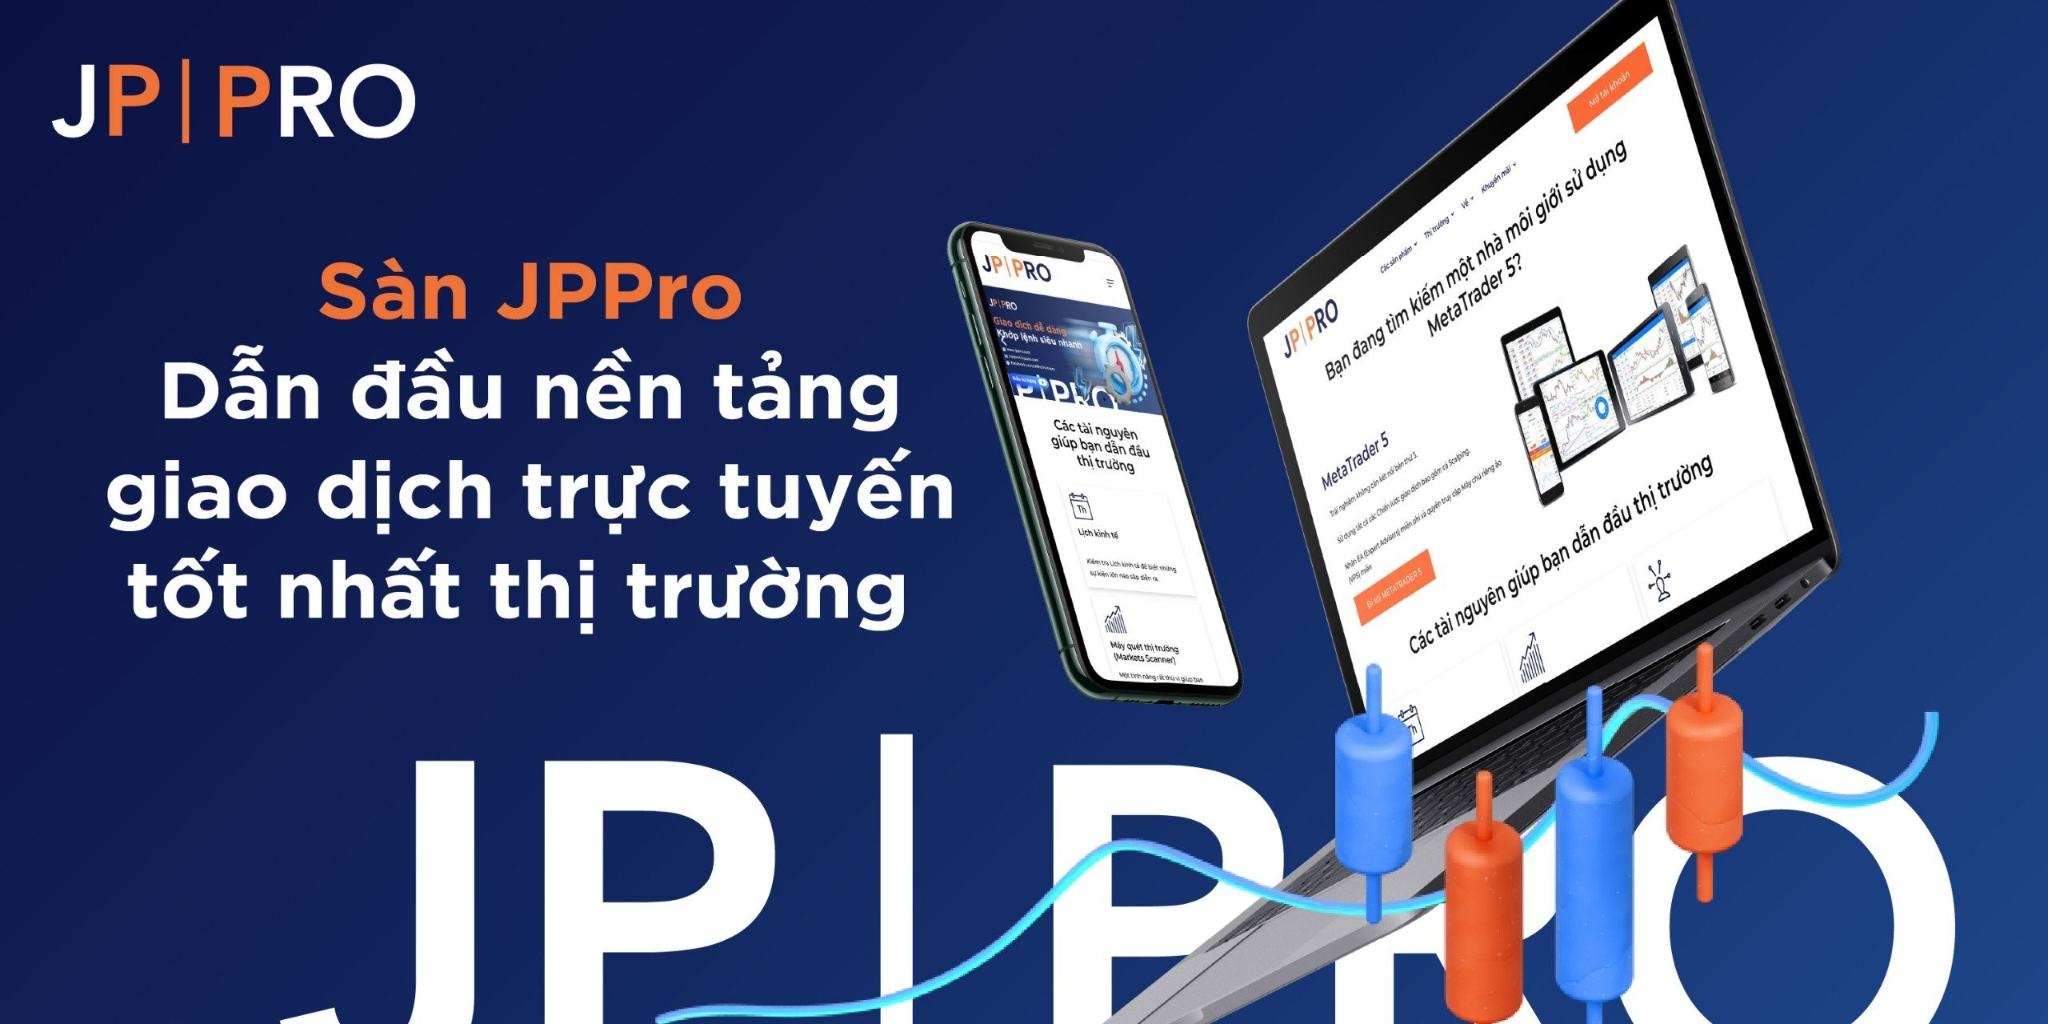 JPPro – Dẫn đầu về nền tảng giao dịch trực tuyến trên thị trường